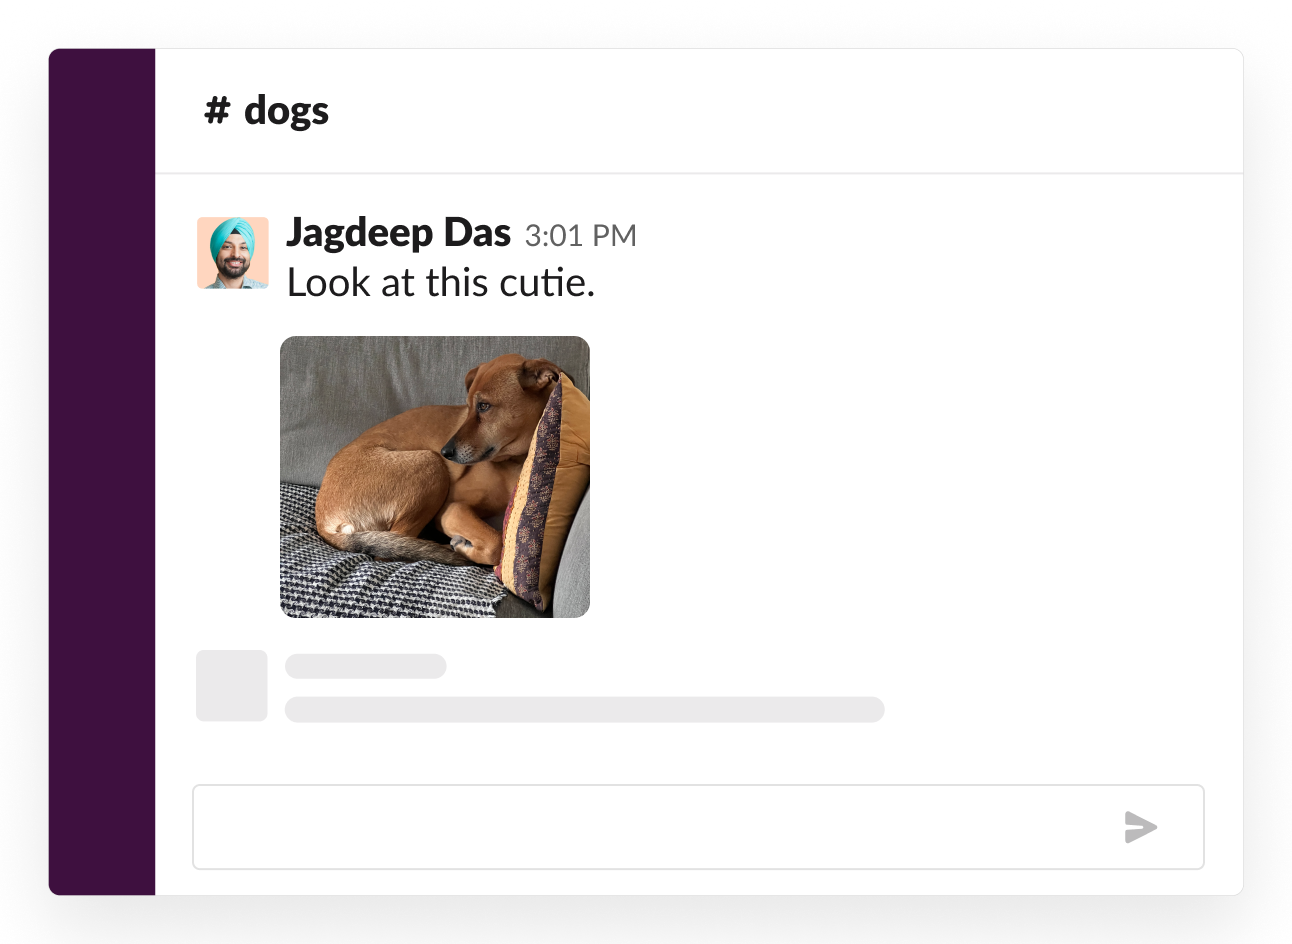 Ejemplo de un canal social sobre perros donde alguien compartió una fotografía enternecedora de su cachorro